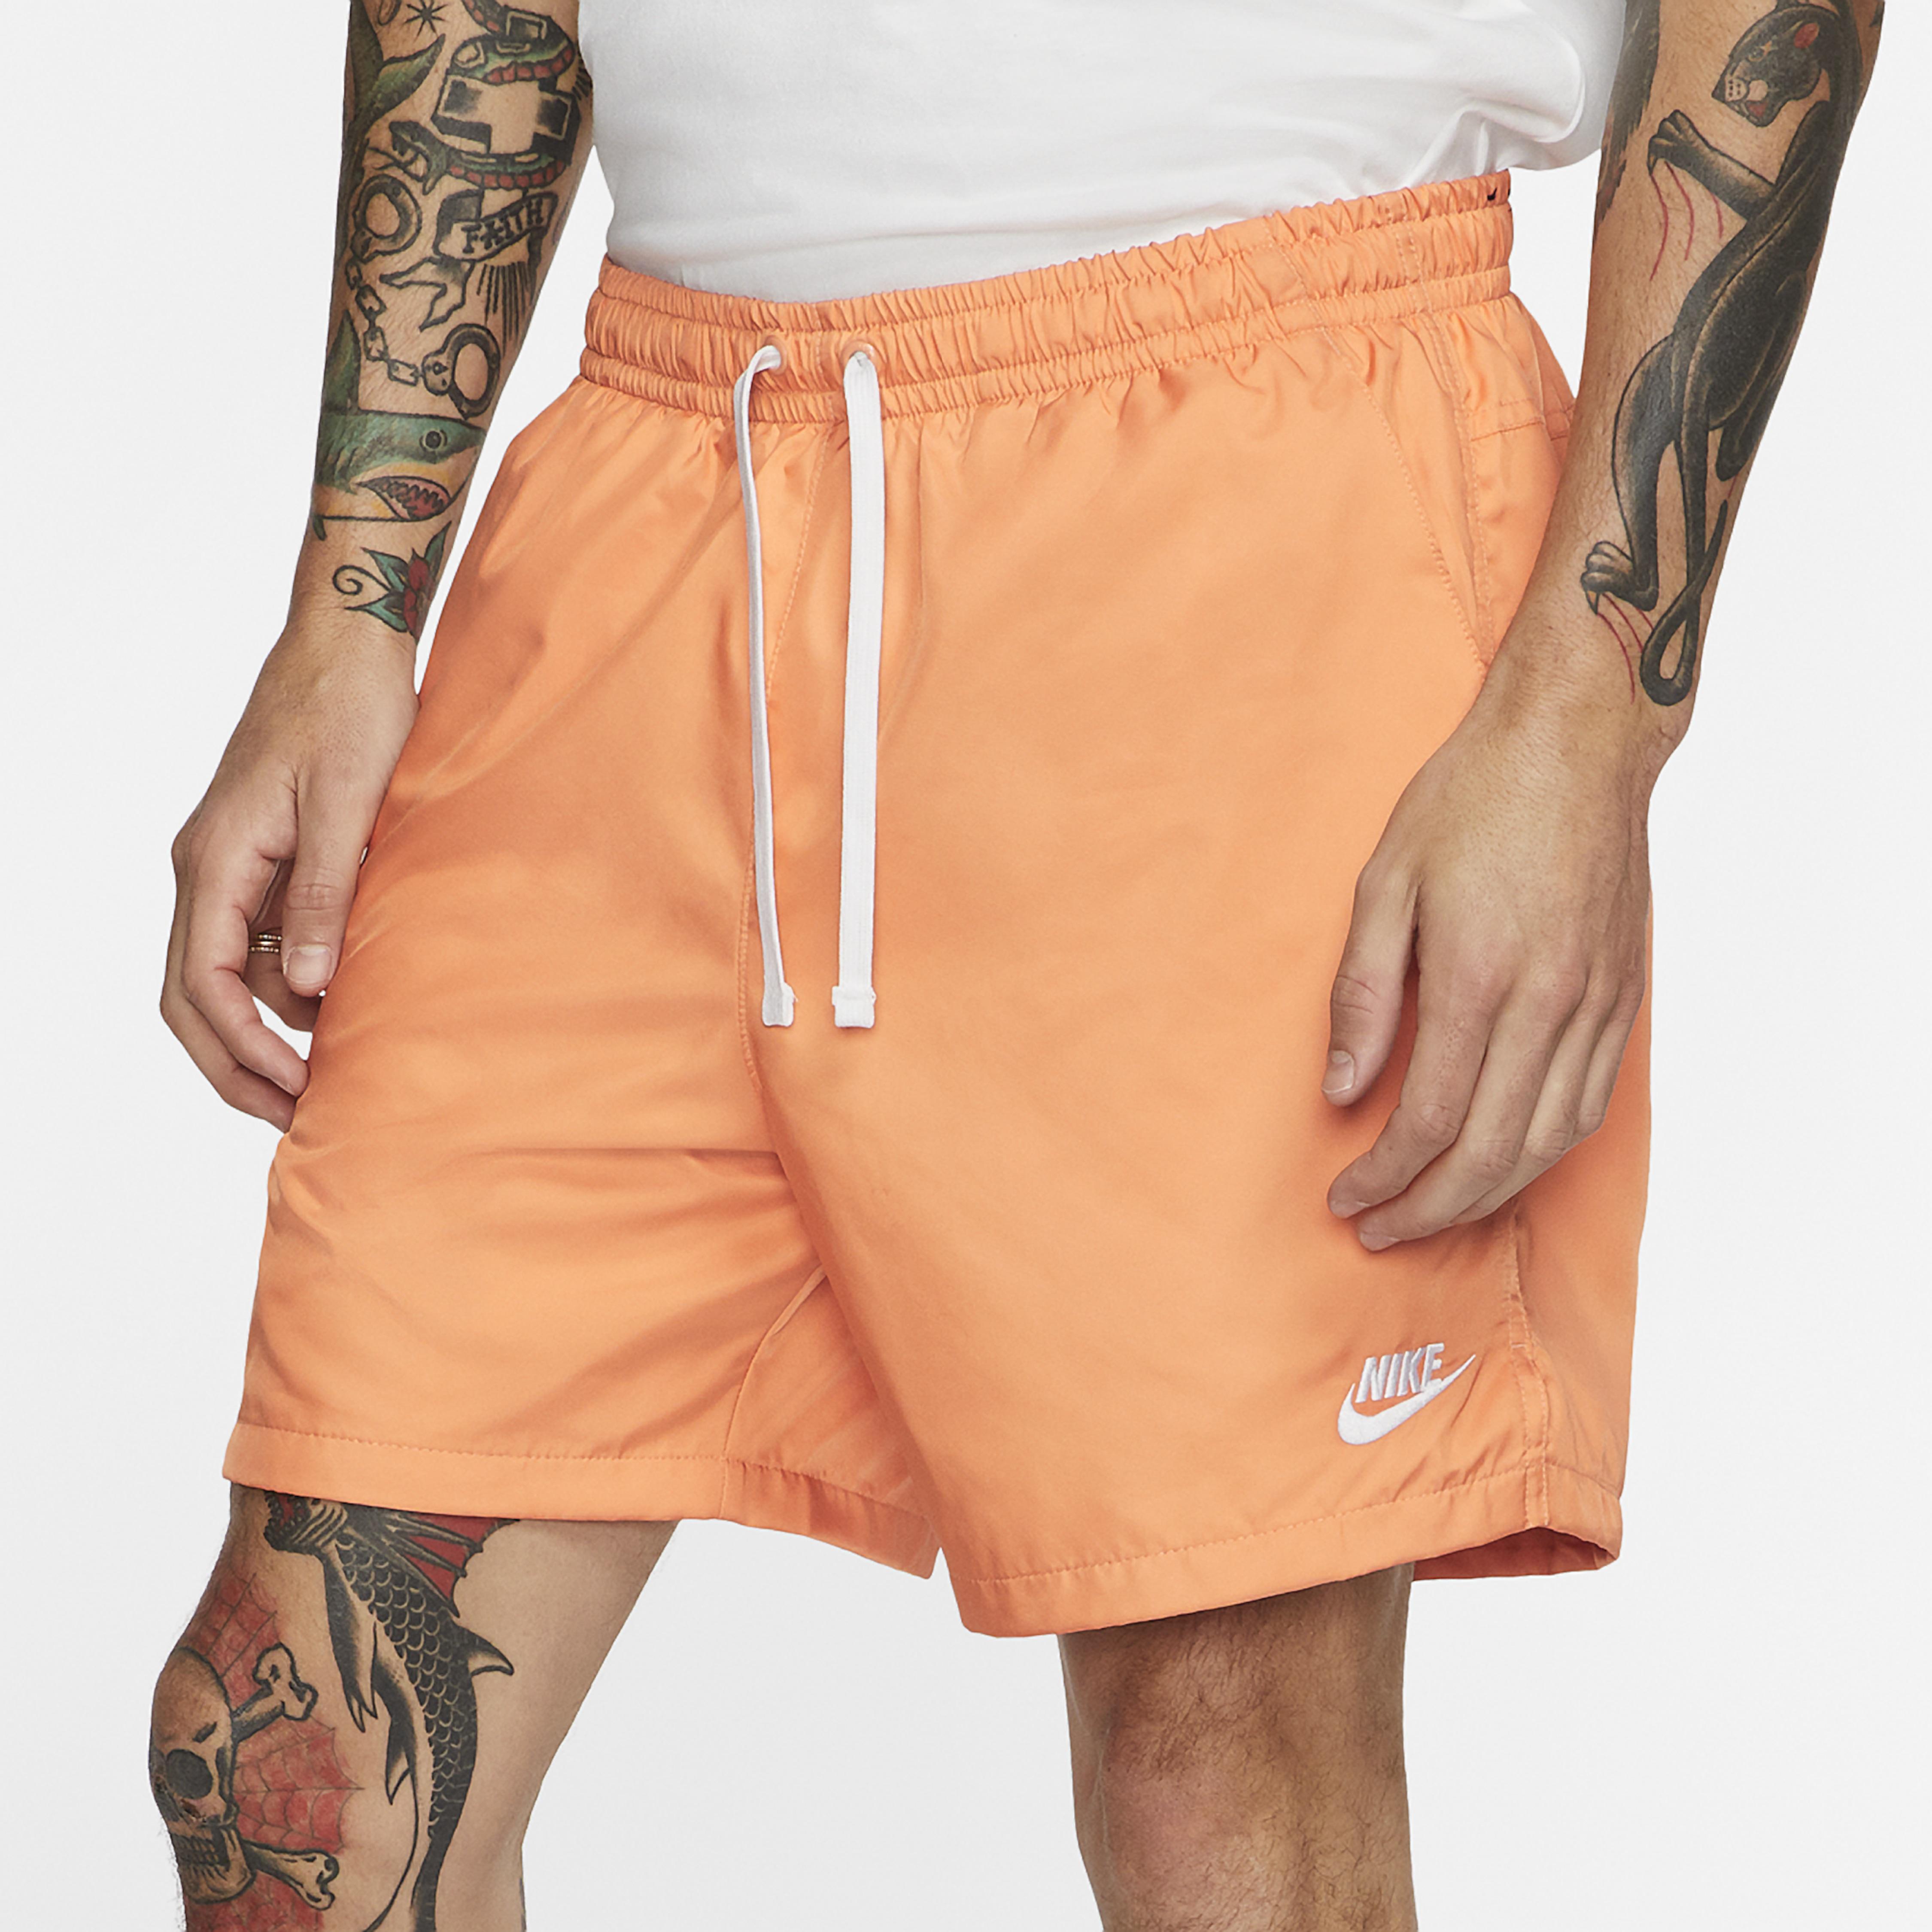 nike orange woven shorts